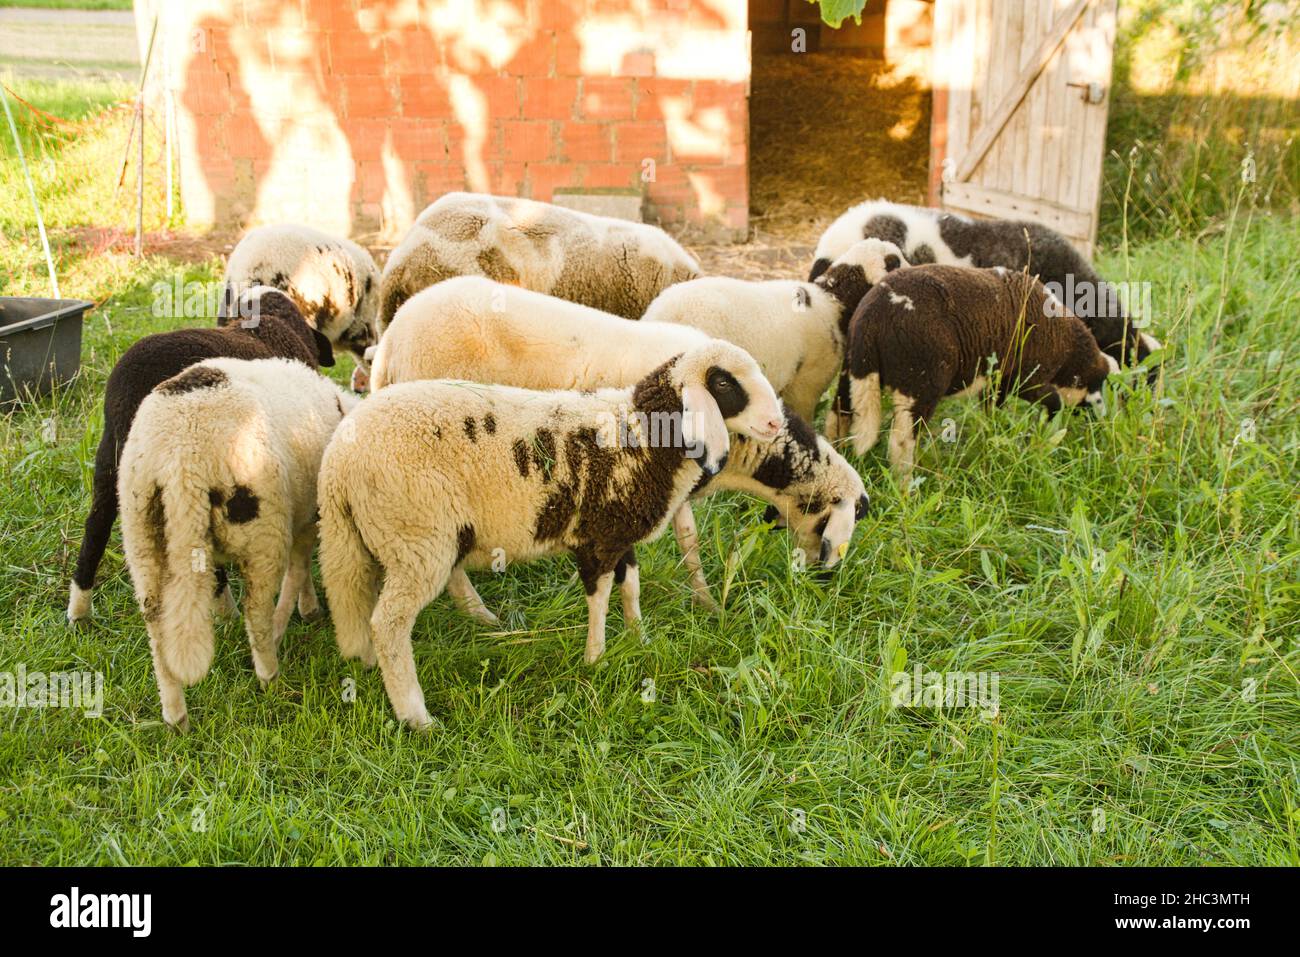 Schafsherde auf der Weide neben dem Stall Banque D'Images